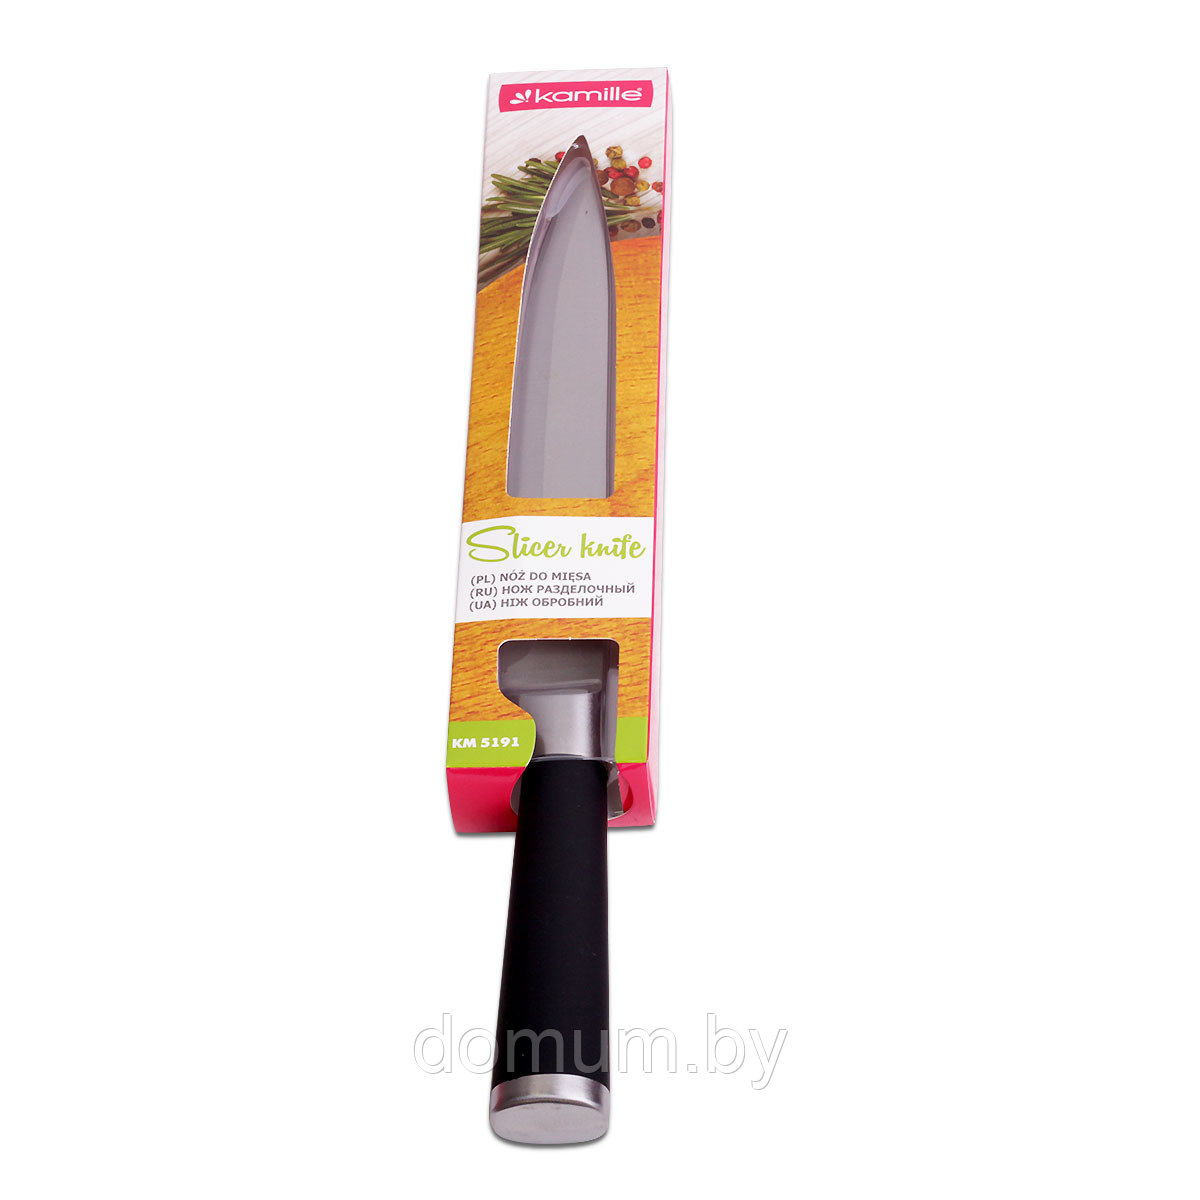 Нож разделочный Kamille из нержавеющей стали с с полыми ручками "soft touch KM-5191